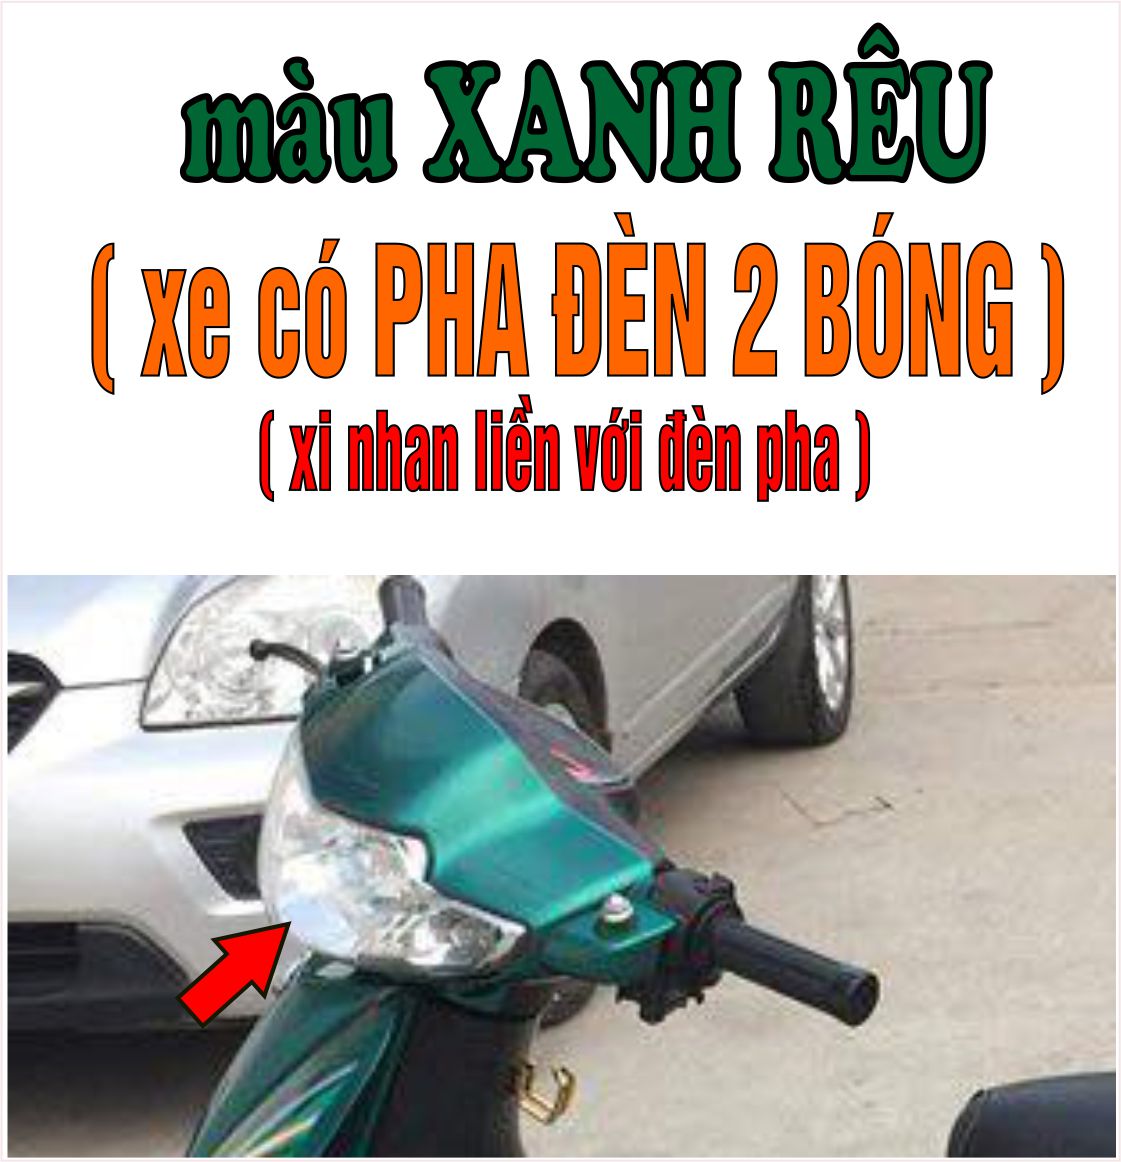 Bộ vỏ nhựa màu XANH RÊU cho xe Wave 110 - Wave  Thái  - Wave Zx đời 1997 đến  2006-TKB-660(8272)